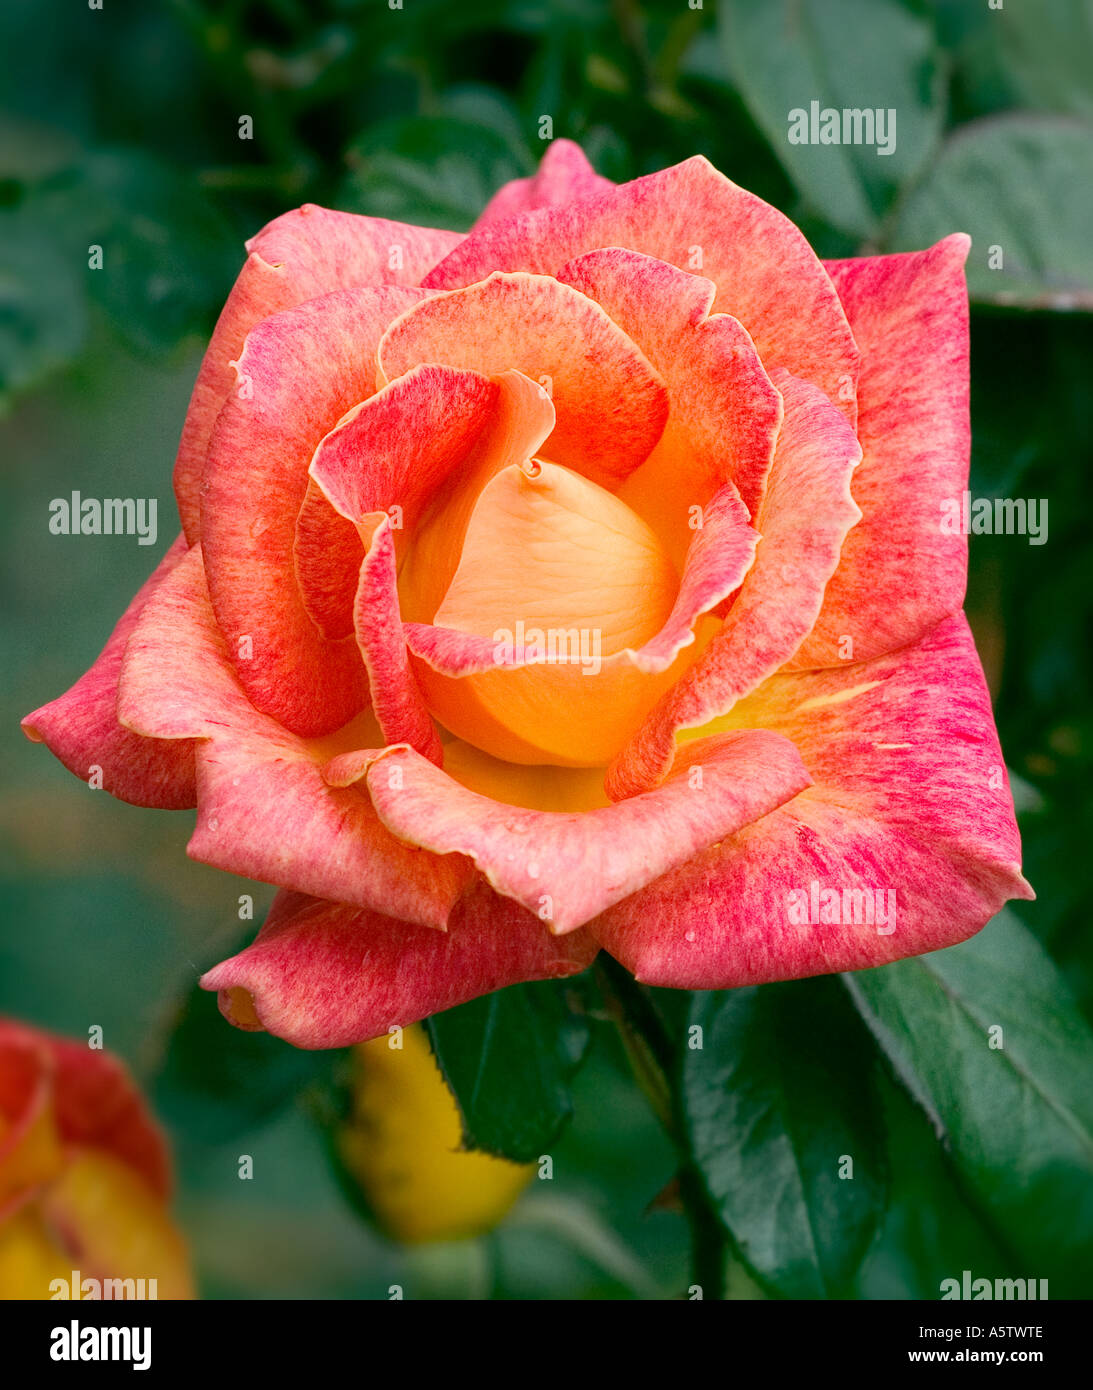 Varigated orange/jaune rose tourné en milieu naturel - variété non identifié Banque D'Images